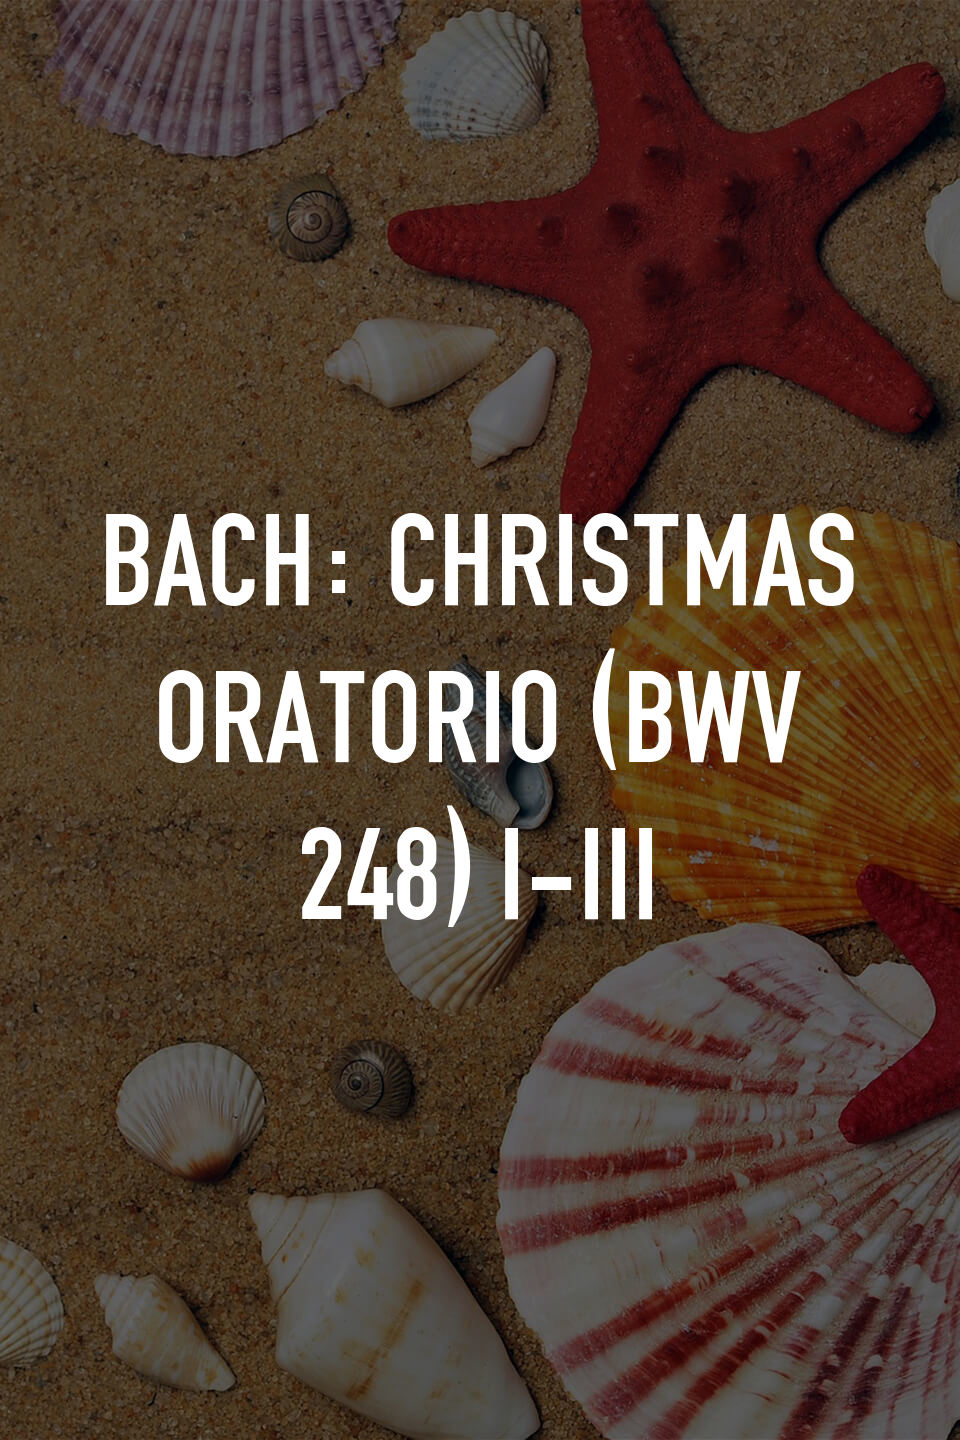 Bach - Christmas Oratorio, BWV 248 Online | Claro tv+